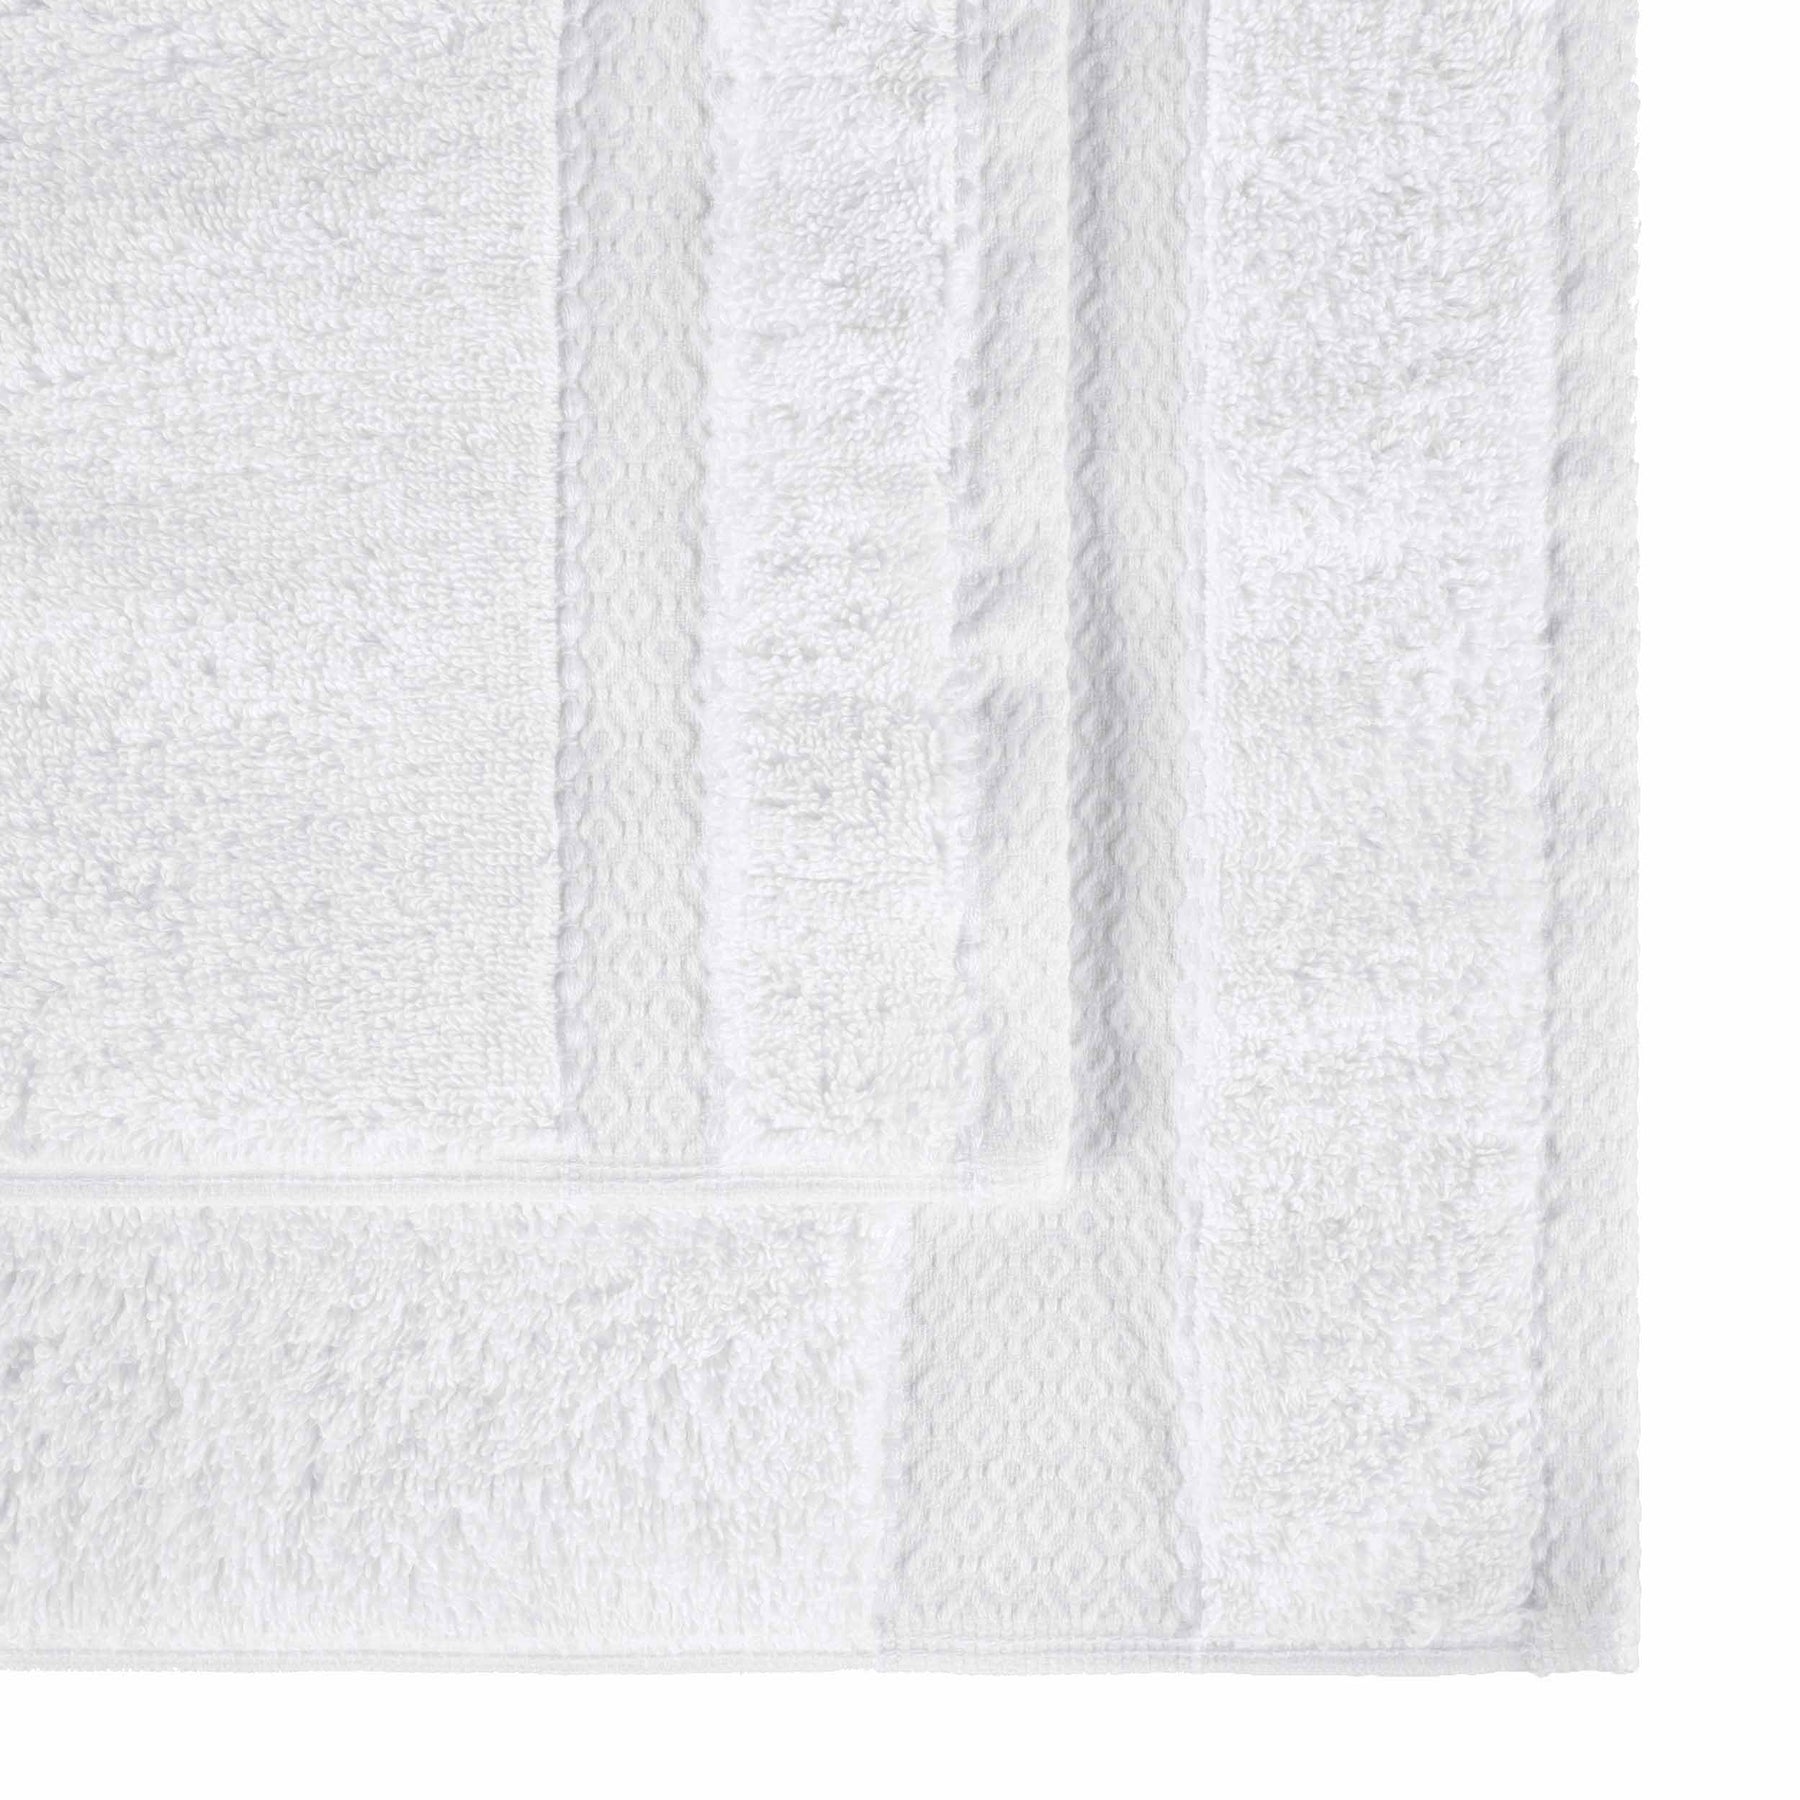 Niles Egyptian Giza Cotton Dobby Plush Face Towel Washcloth - White